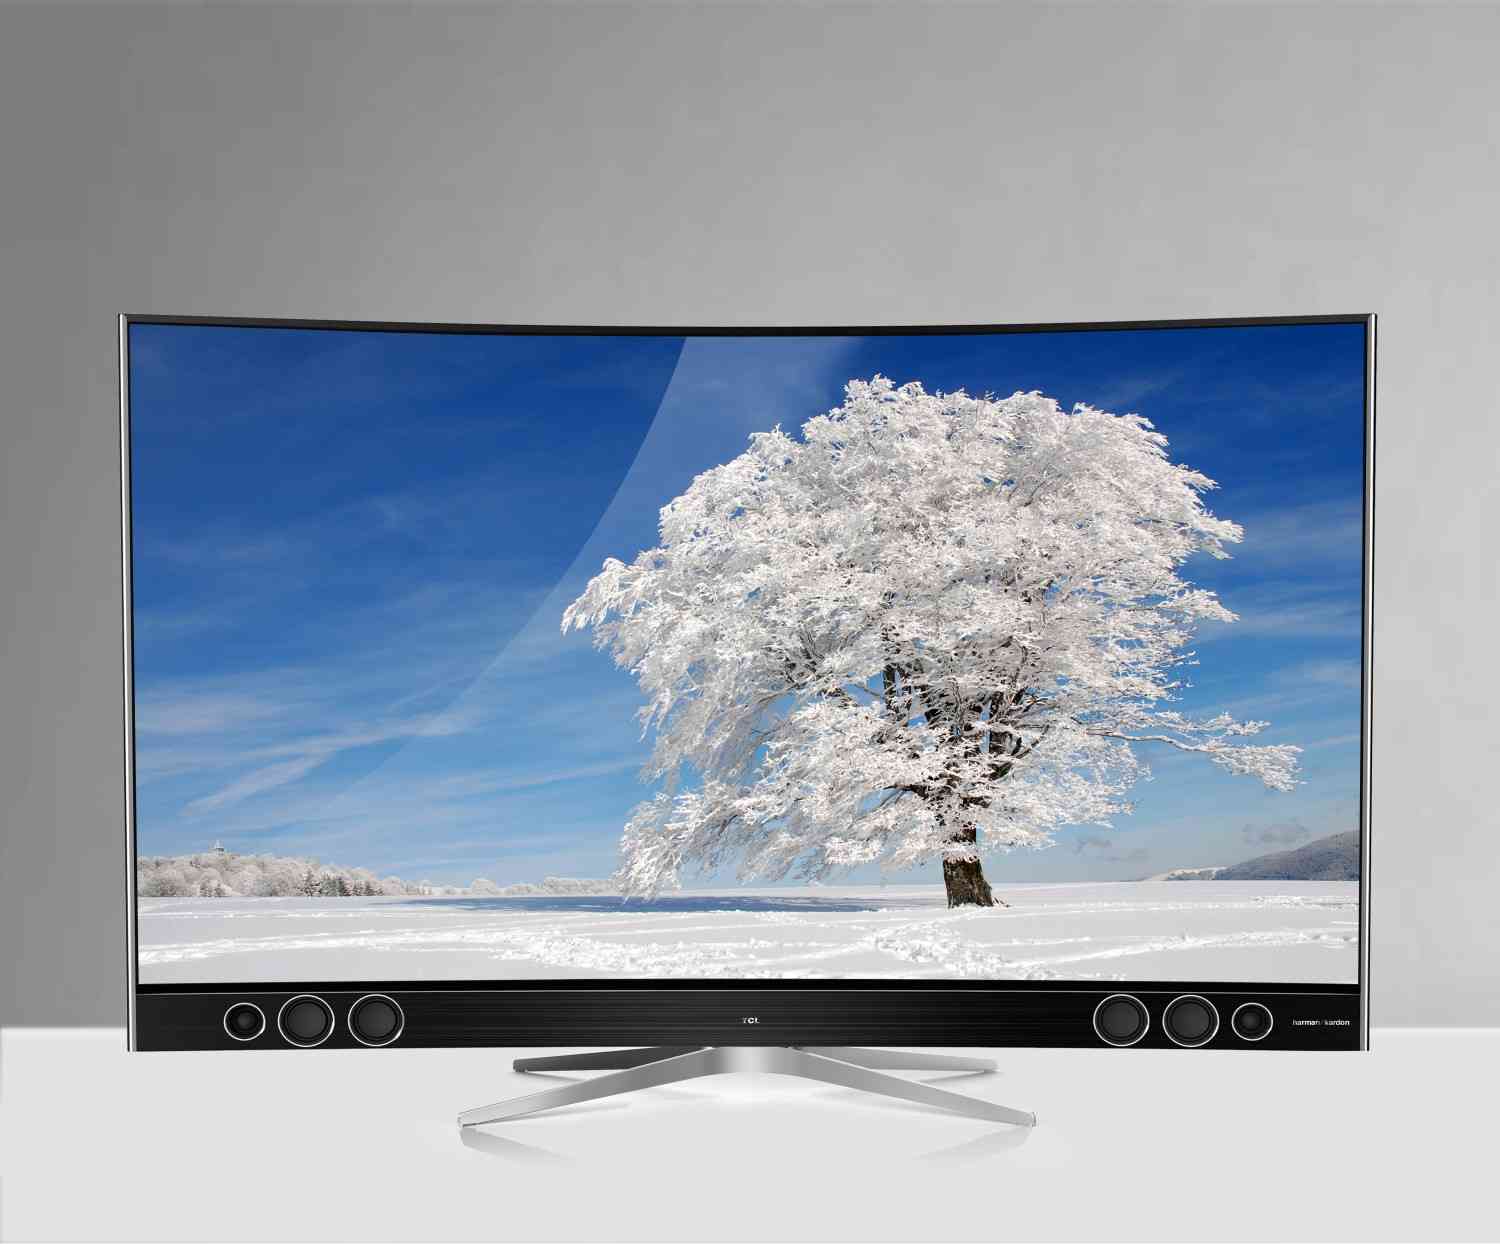 TV CES 2016: QUHD-TV von TCL mit HDR-Technik - Fernseher nur 5 Millimeter tief - News, Bild 1